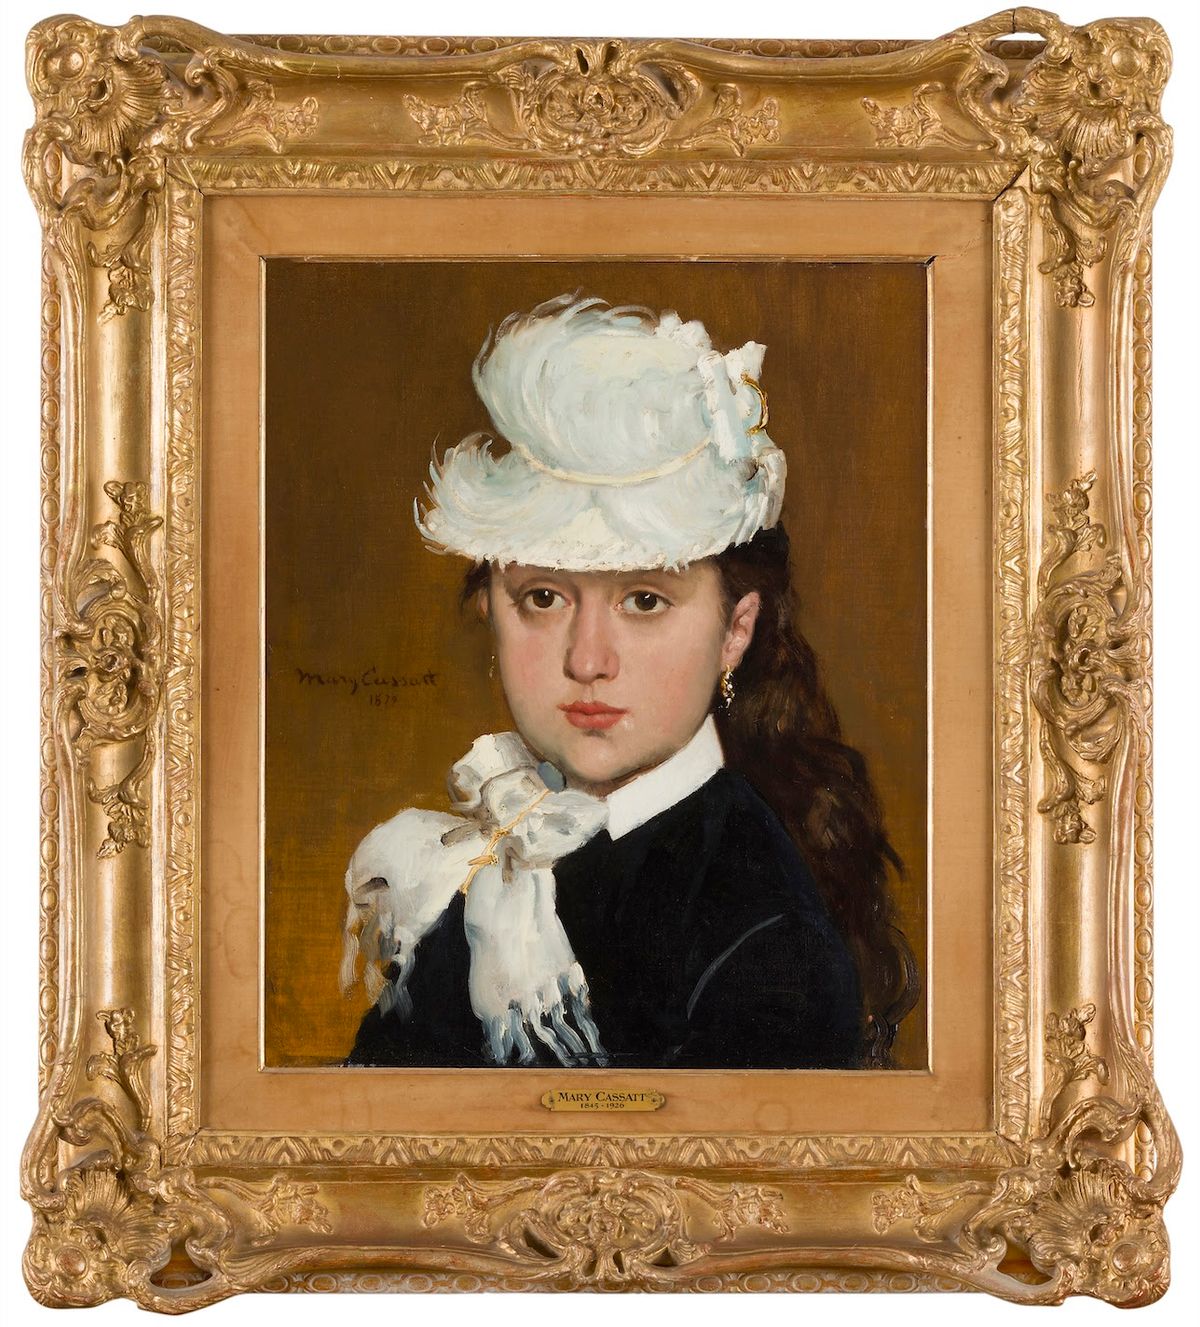 Mary Cassatt, Portrait de jeune femme au chapeau blanc, 1879, huile sur toile, 46 x 38 cm.
© Ader